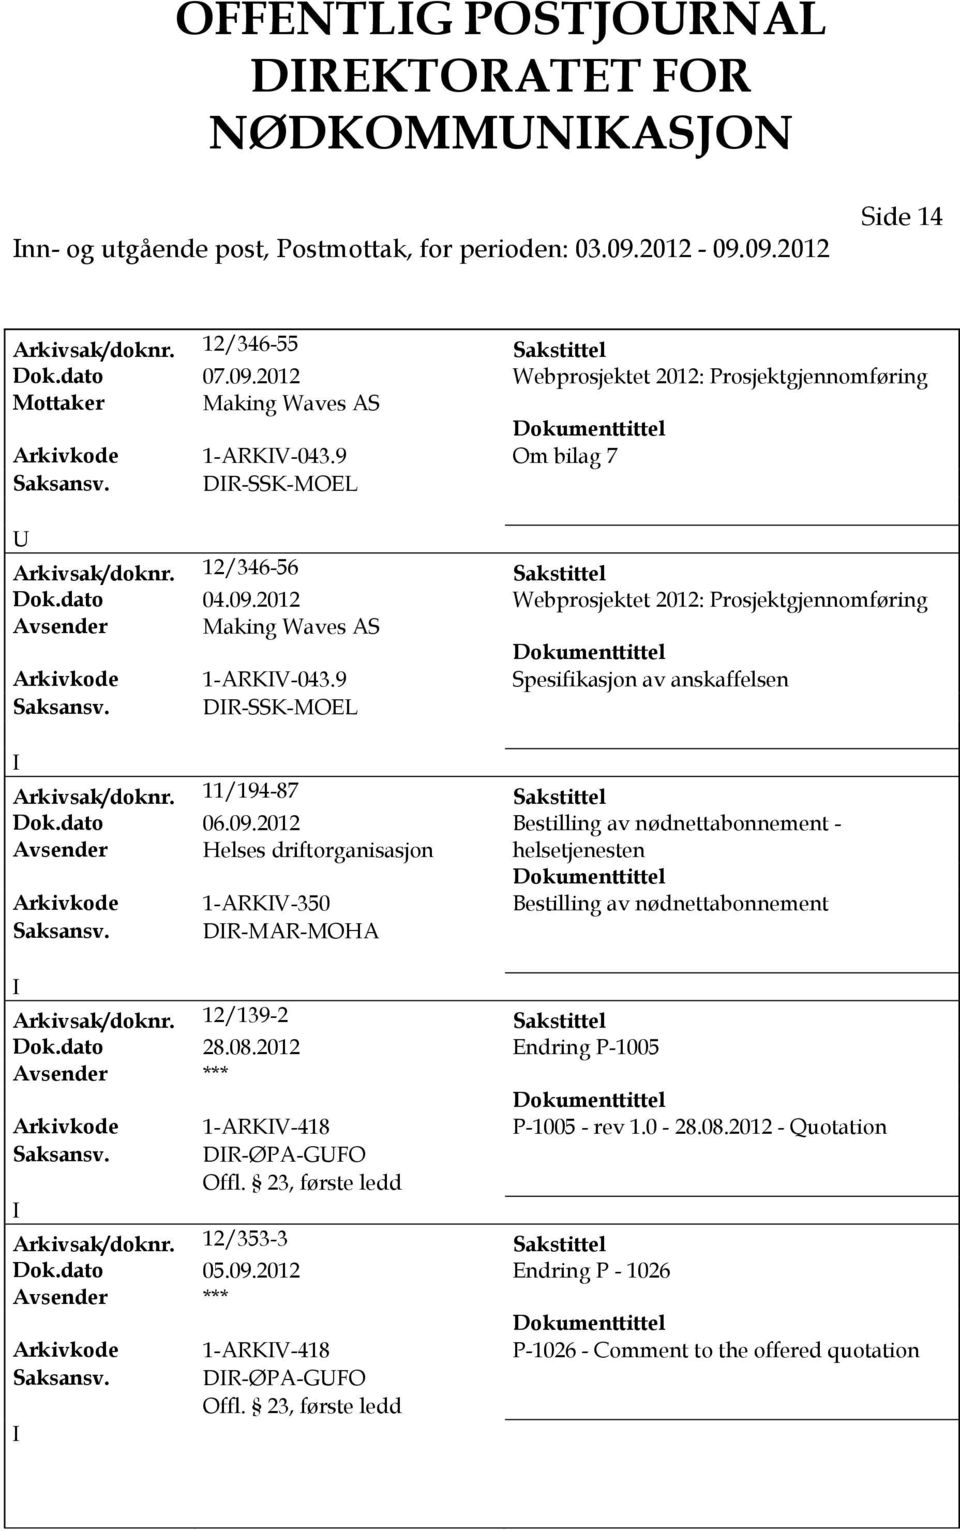 9 Spesifikasjon av anskaffelsen Saksansv. DR-SSK-MOEL Arkivsak/doknr. 11/194-87 Sakstittel Dok.dato 06.09.